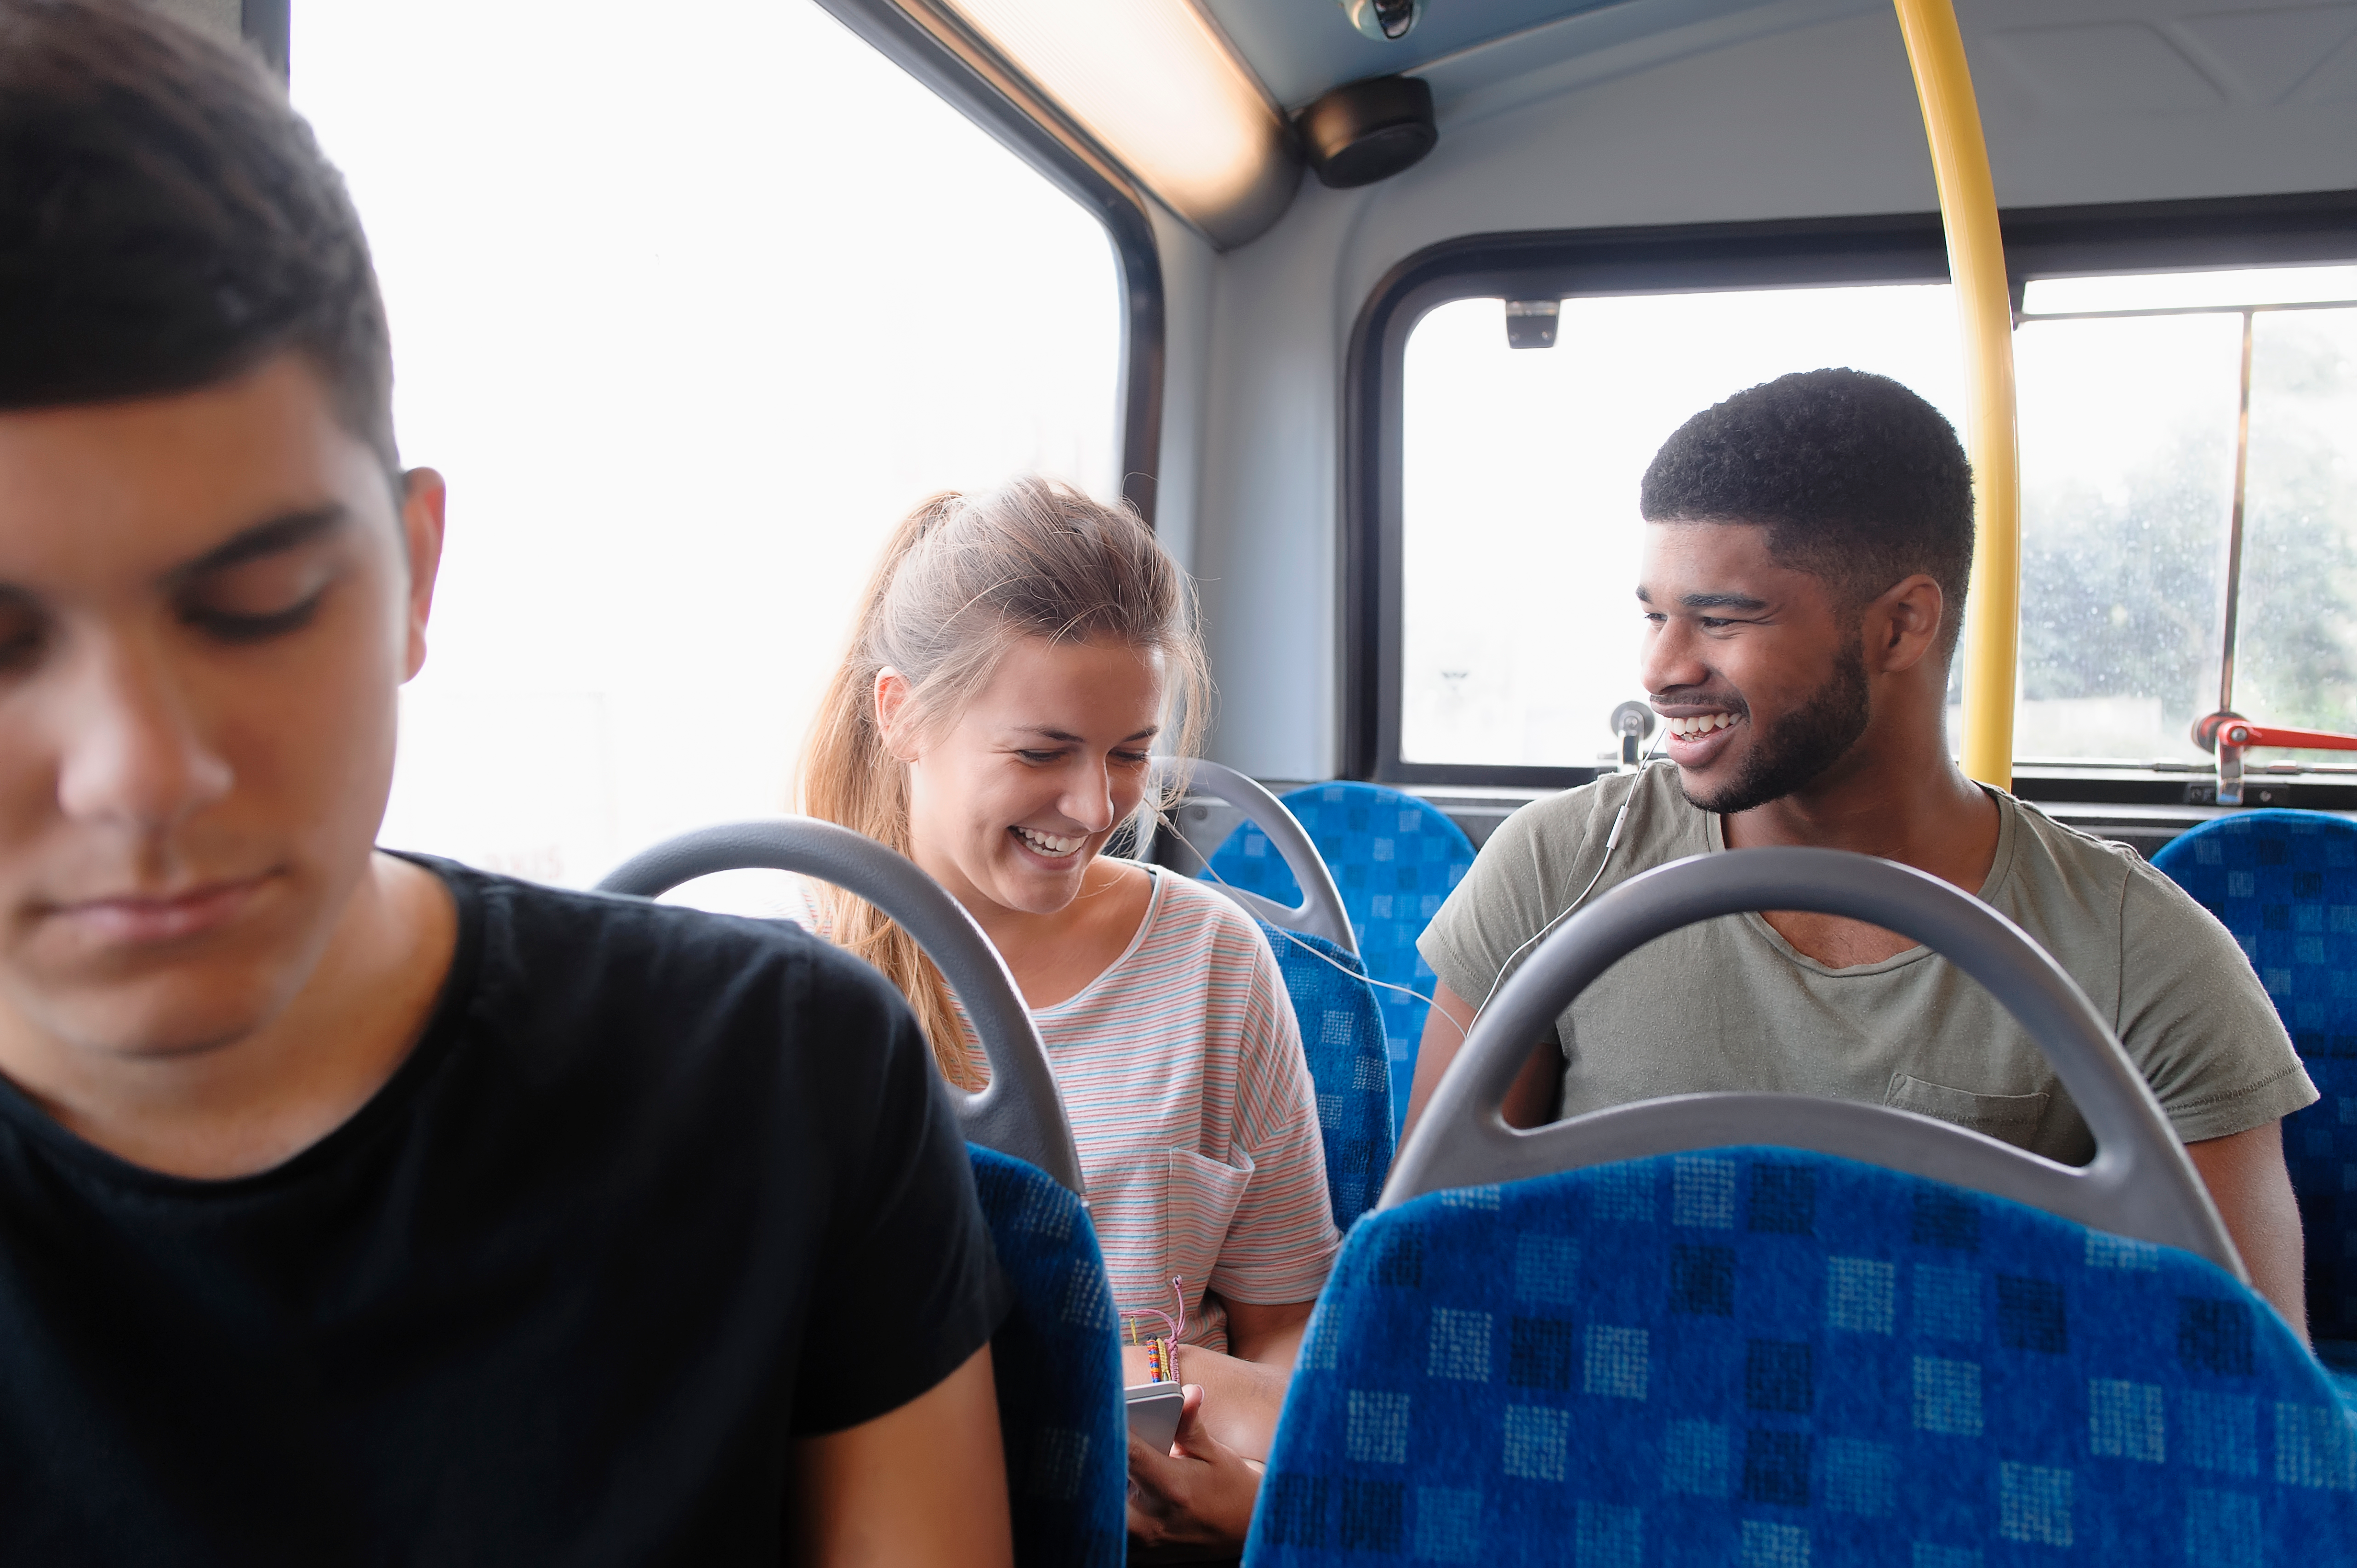 Een man en vrouw lachen samen terwijl ze naast elkaar in de bus zitten.